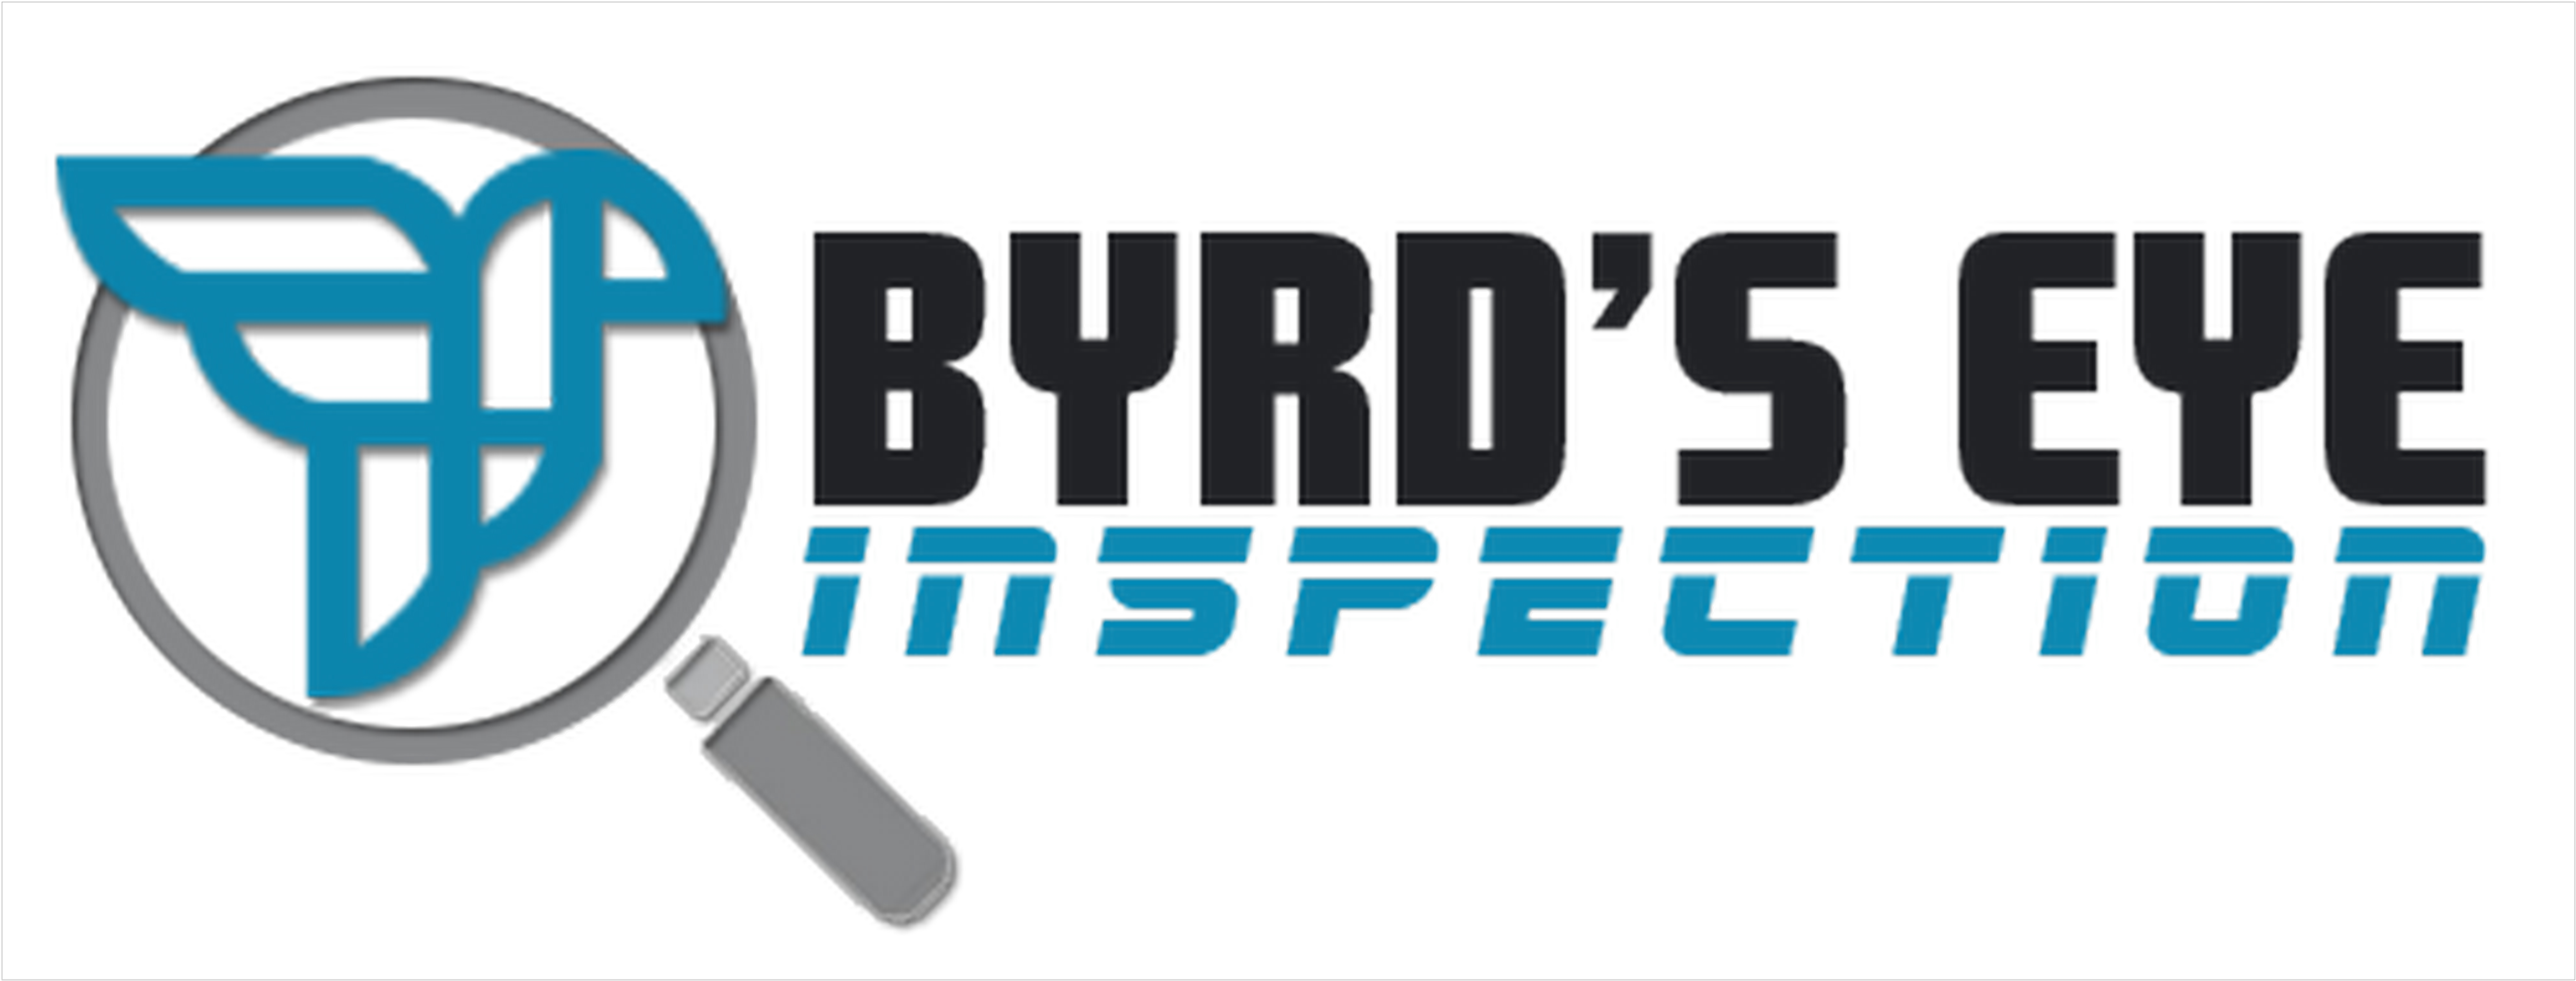 Byrds Eye Inspections Logo